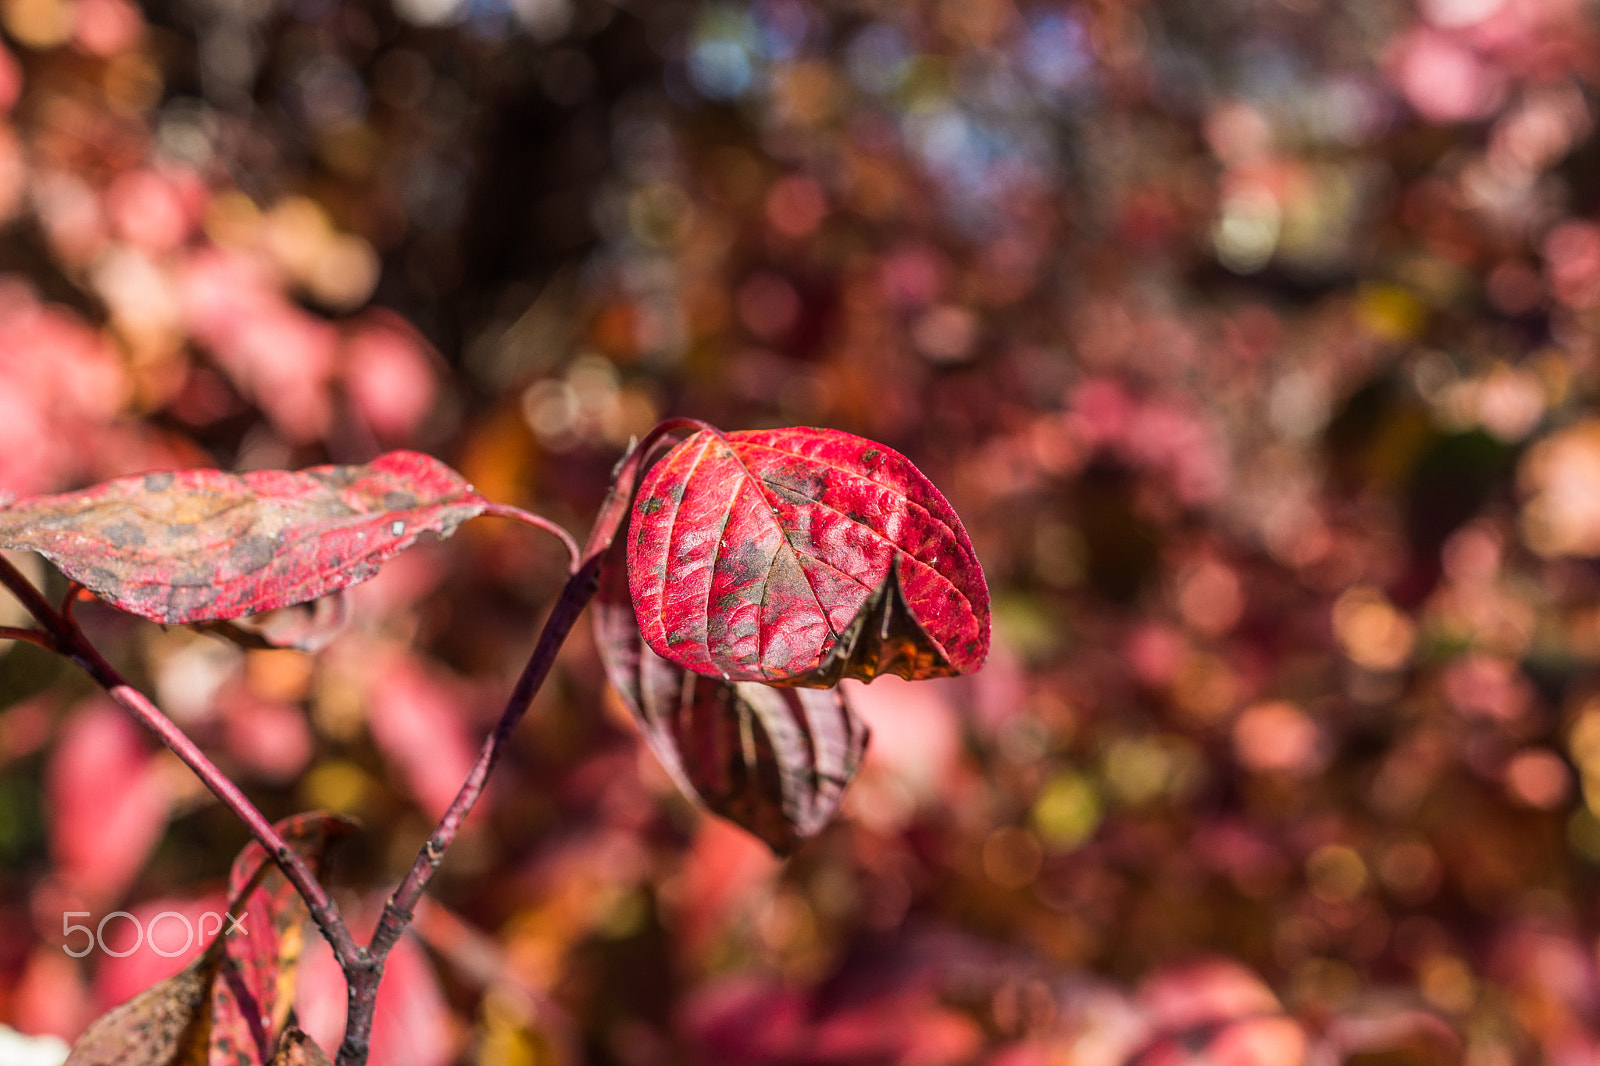 Sony SLT-A77 sample photo. Autumn photography